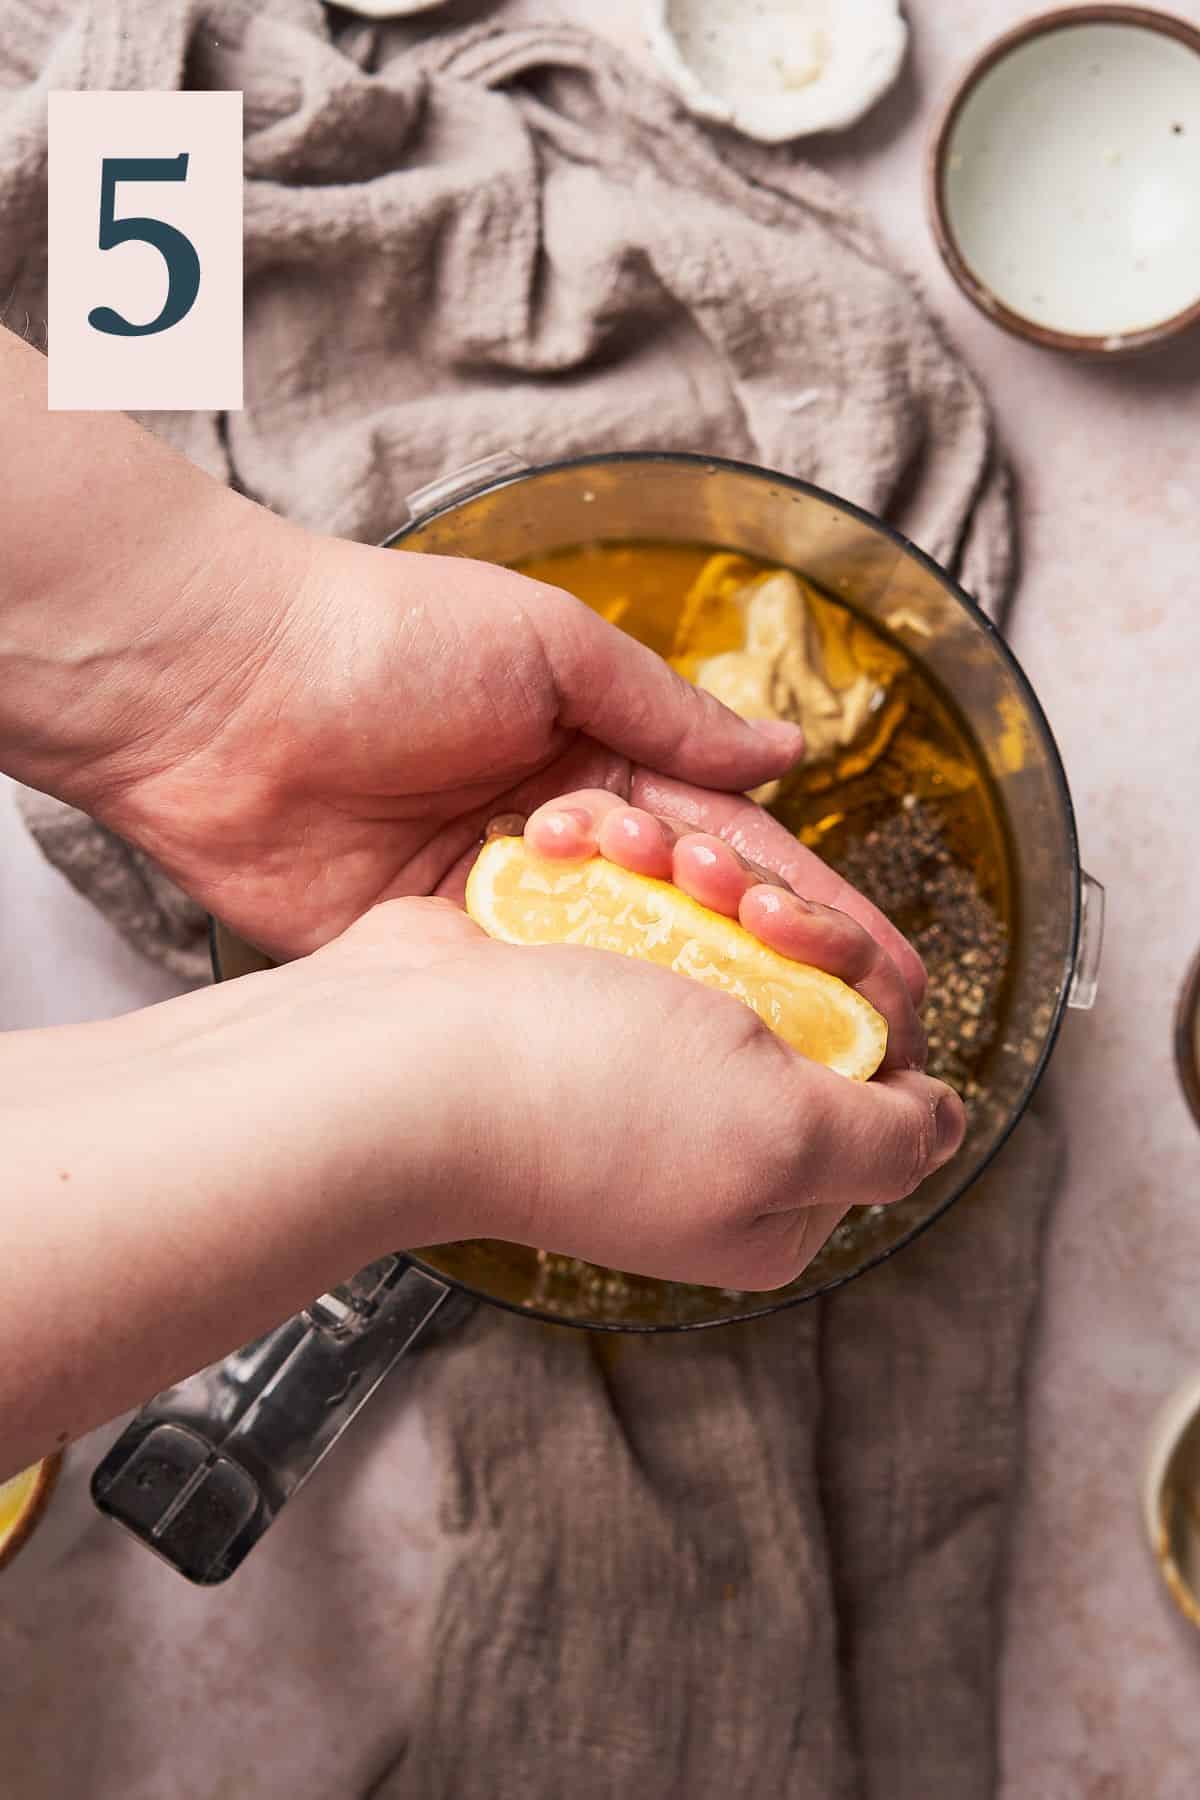 hand squeezing a lemon into a food processor to make a honey lemon dressing.